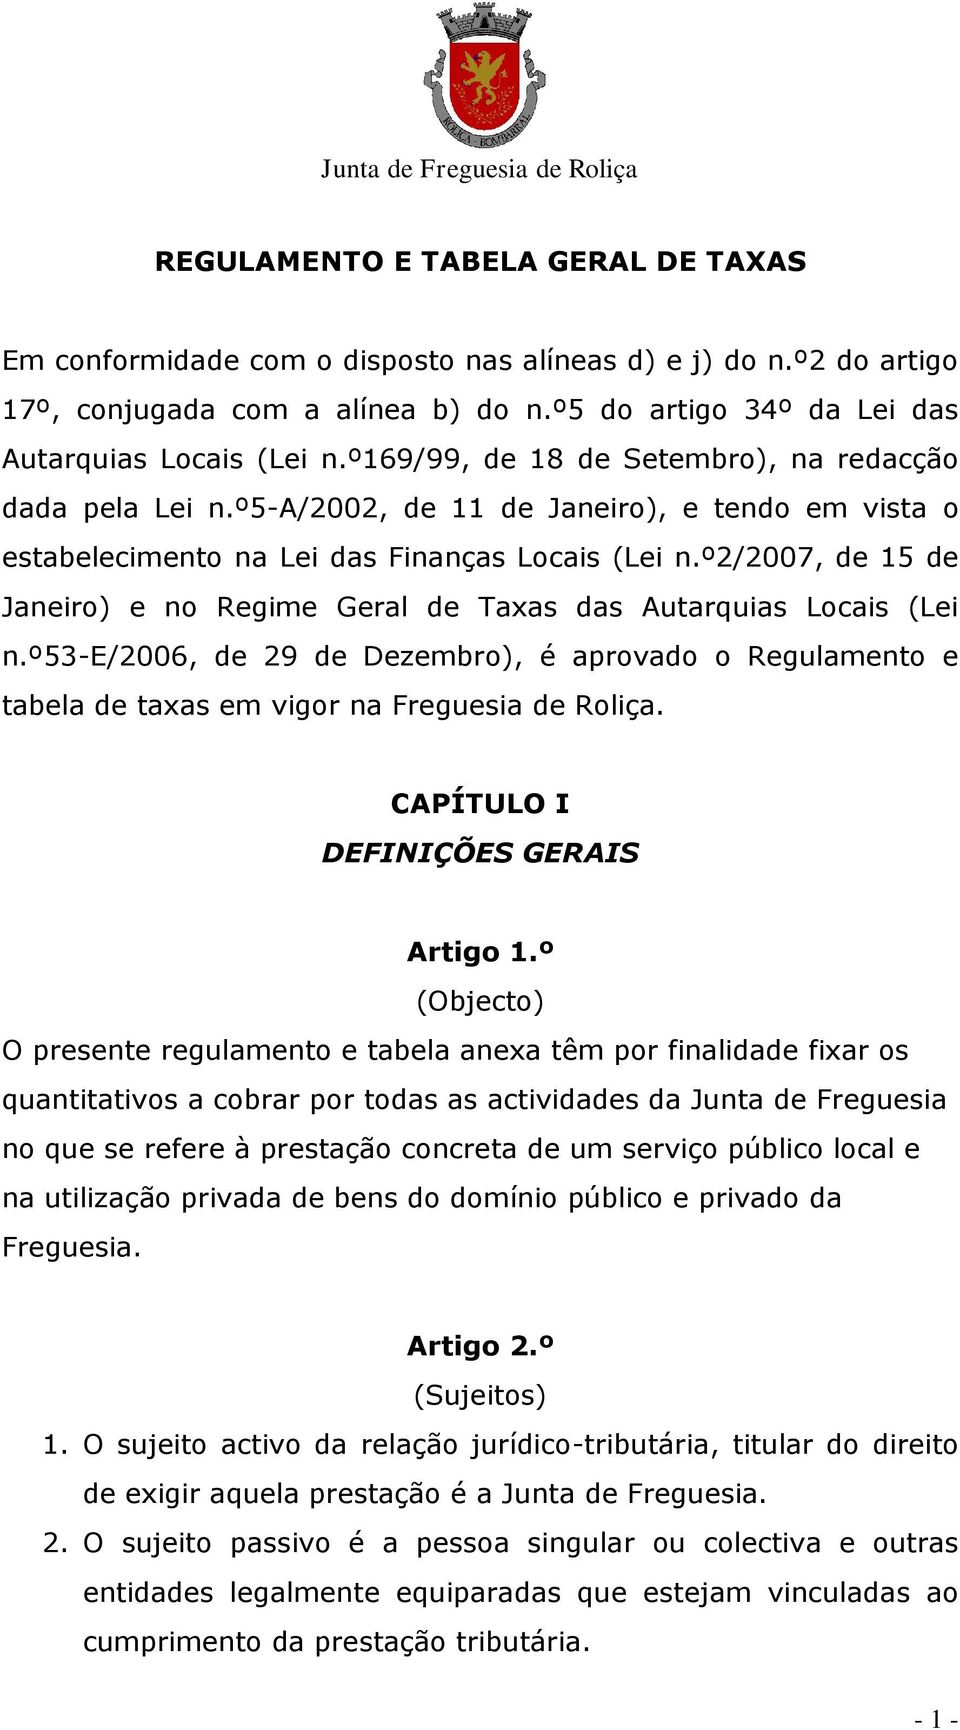 º2/2007, de 15 de Janeiro) e no Regime Geral de Taxas das Autarquias Locais (Lei n.º53-e/2006, de 29 de Dezembro), é aprovado o Regulamento e tabela de taxas em vigor na Freguesia de Roliça.